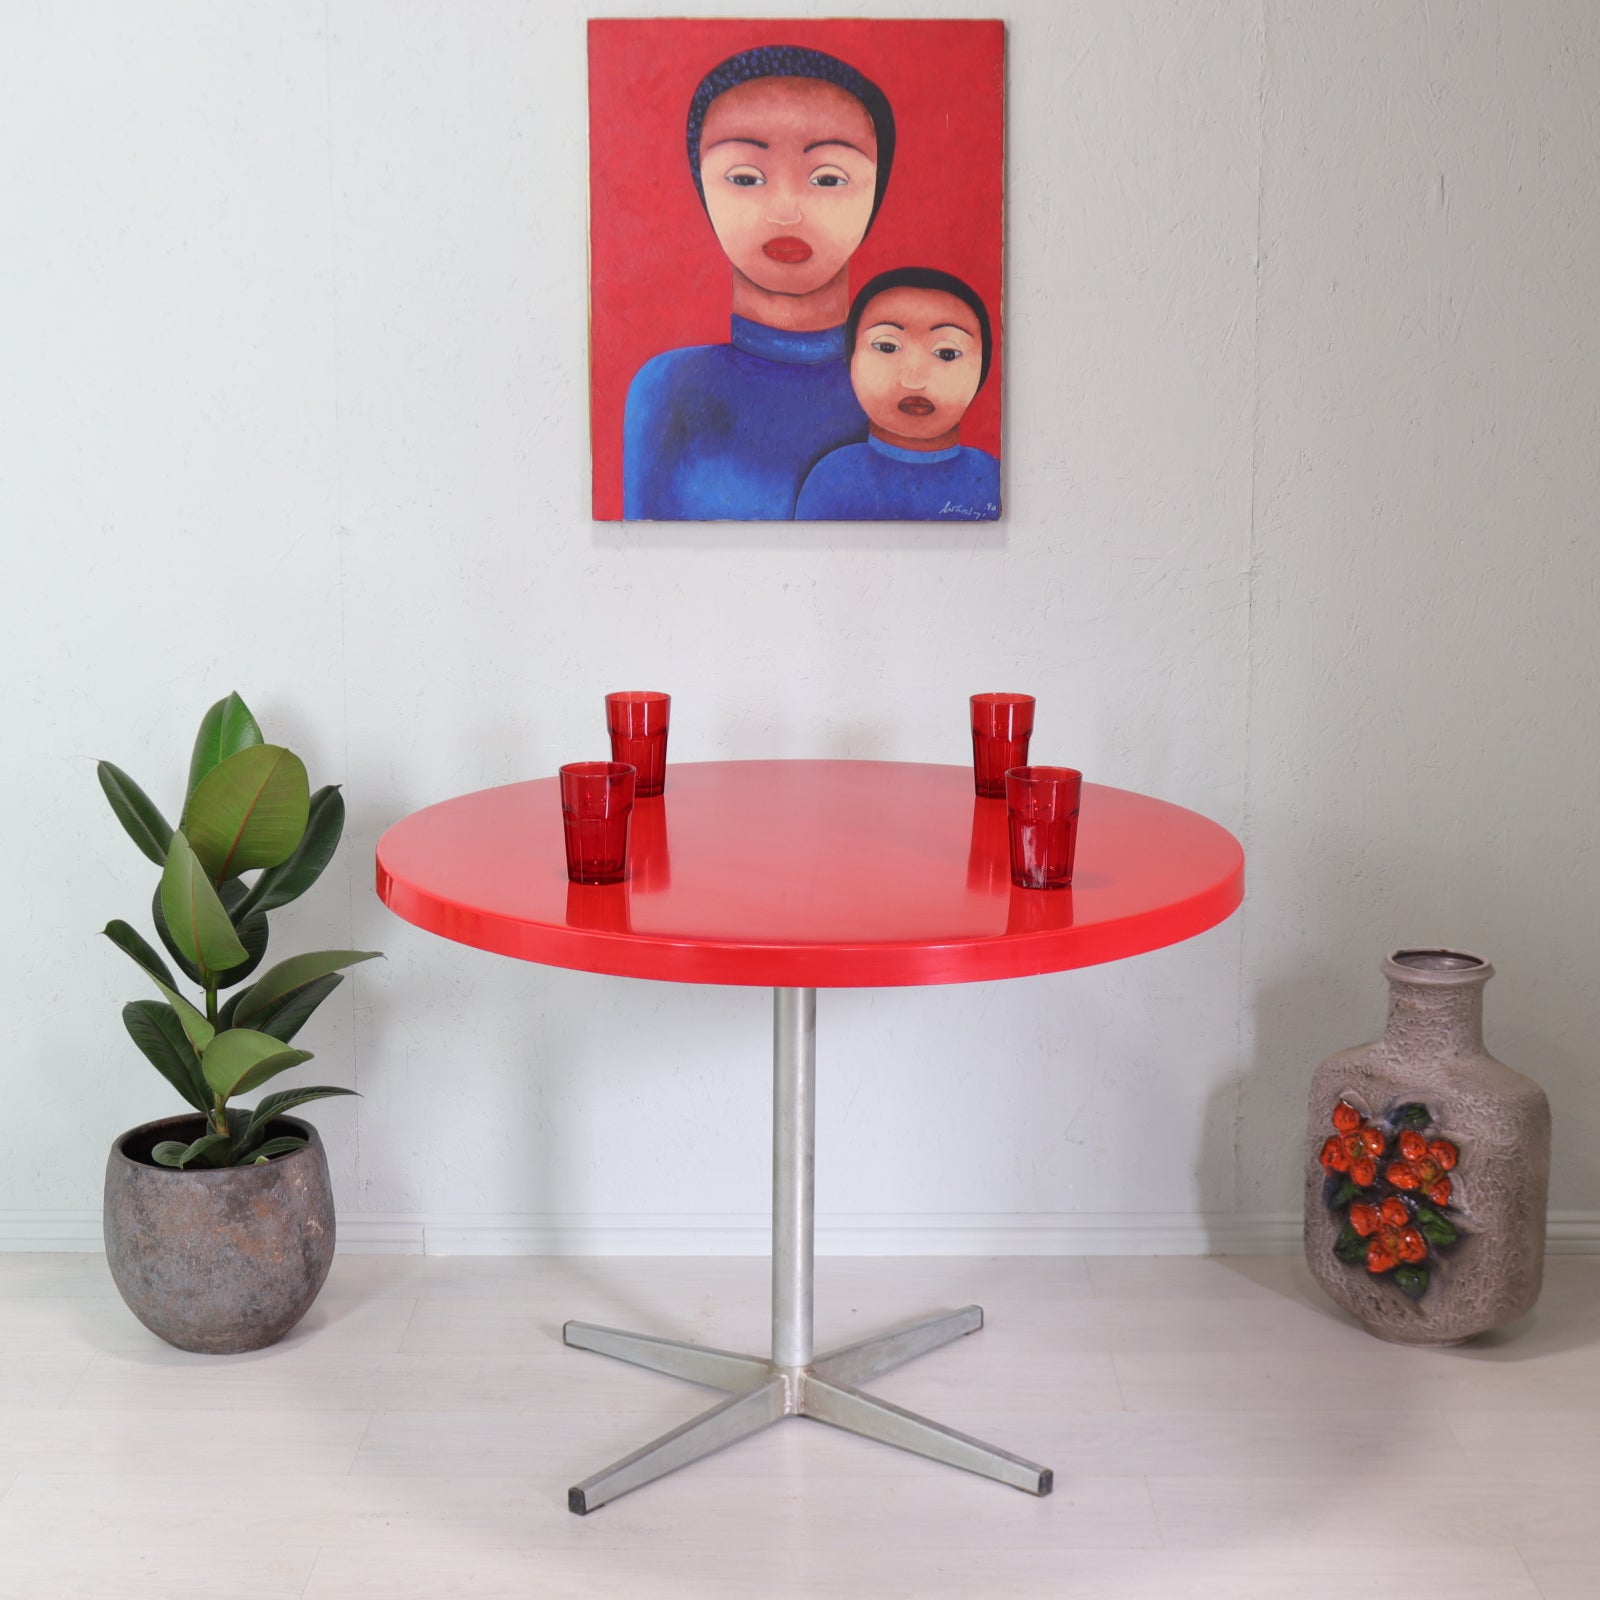 Red Fibreglass and Metal Flip Top Dining Table - teakyfinders